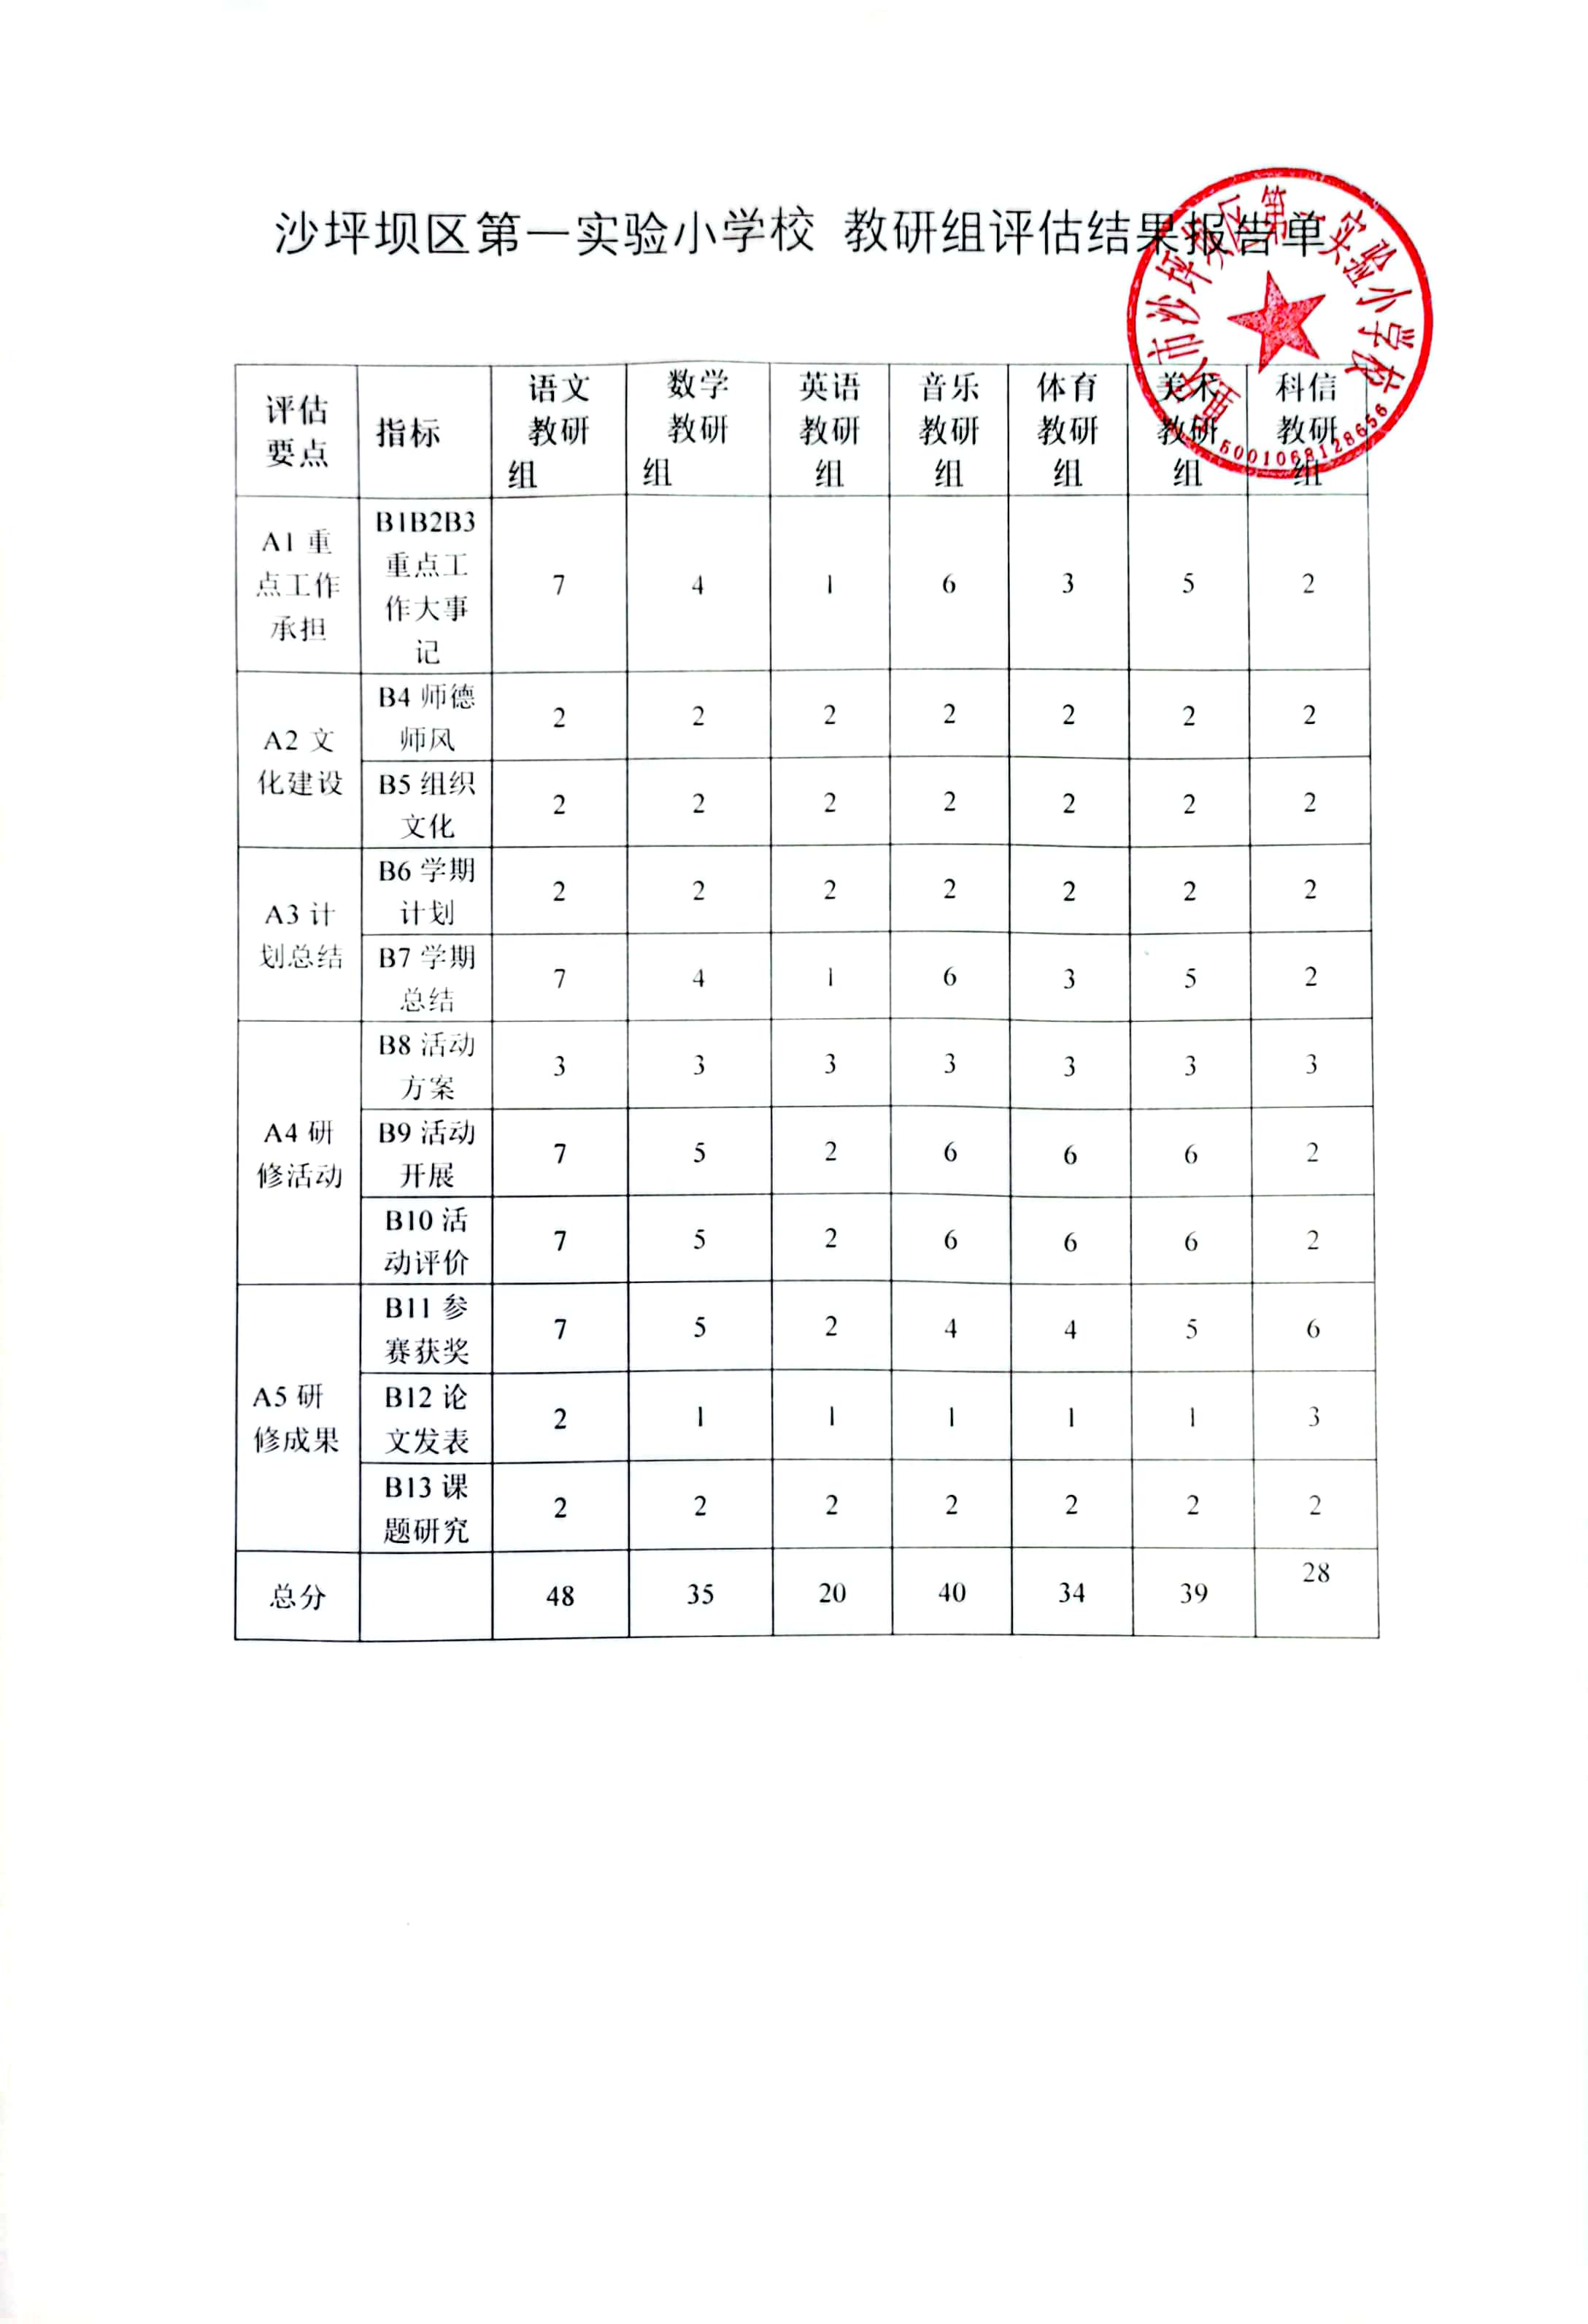 2022-2023优秀教研组评选报告单.jpg